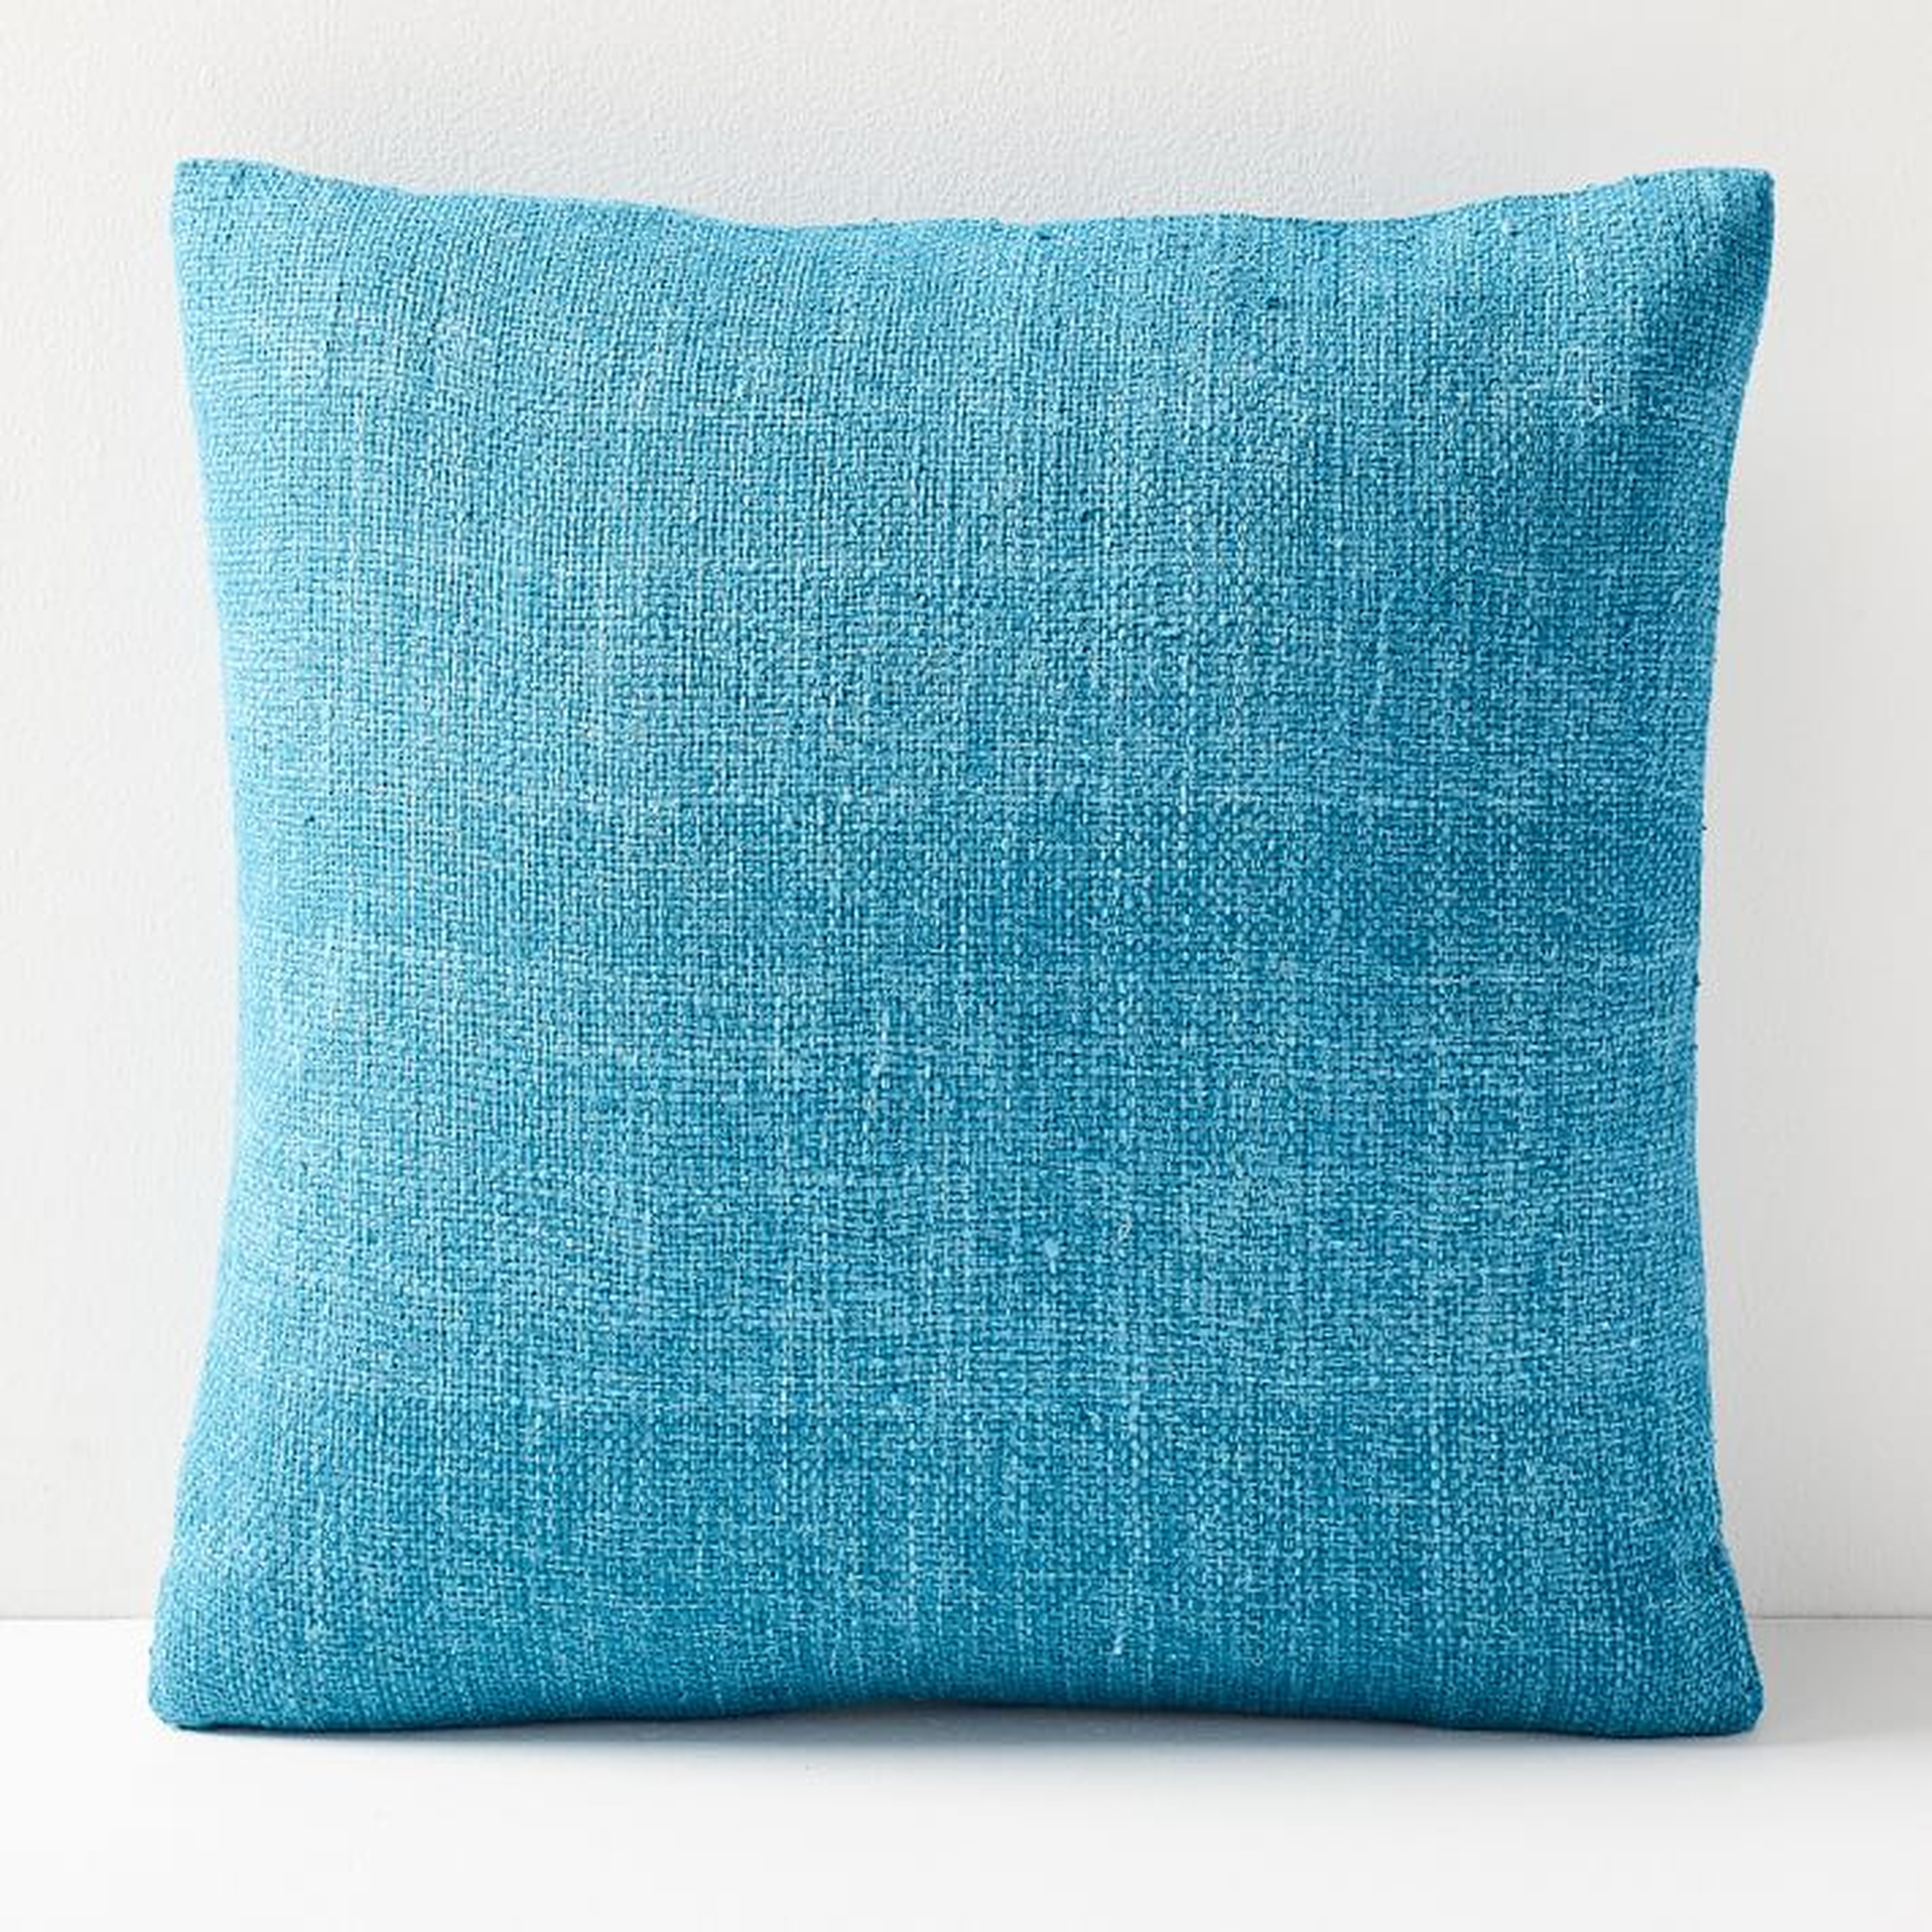 Silk Handloomed Pillow Cover, Blue Teal, 20"x20", Set of 2 - West Elm